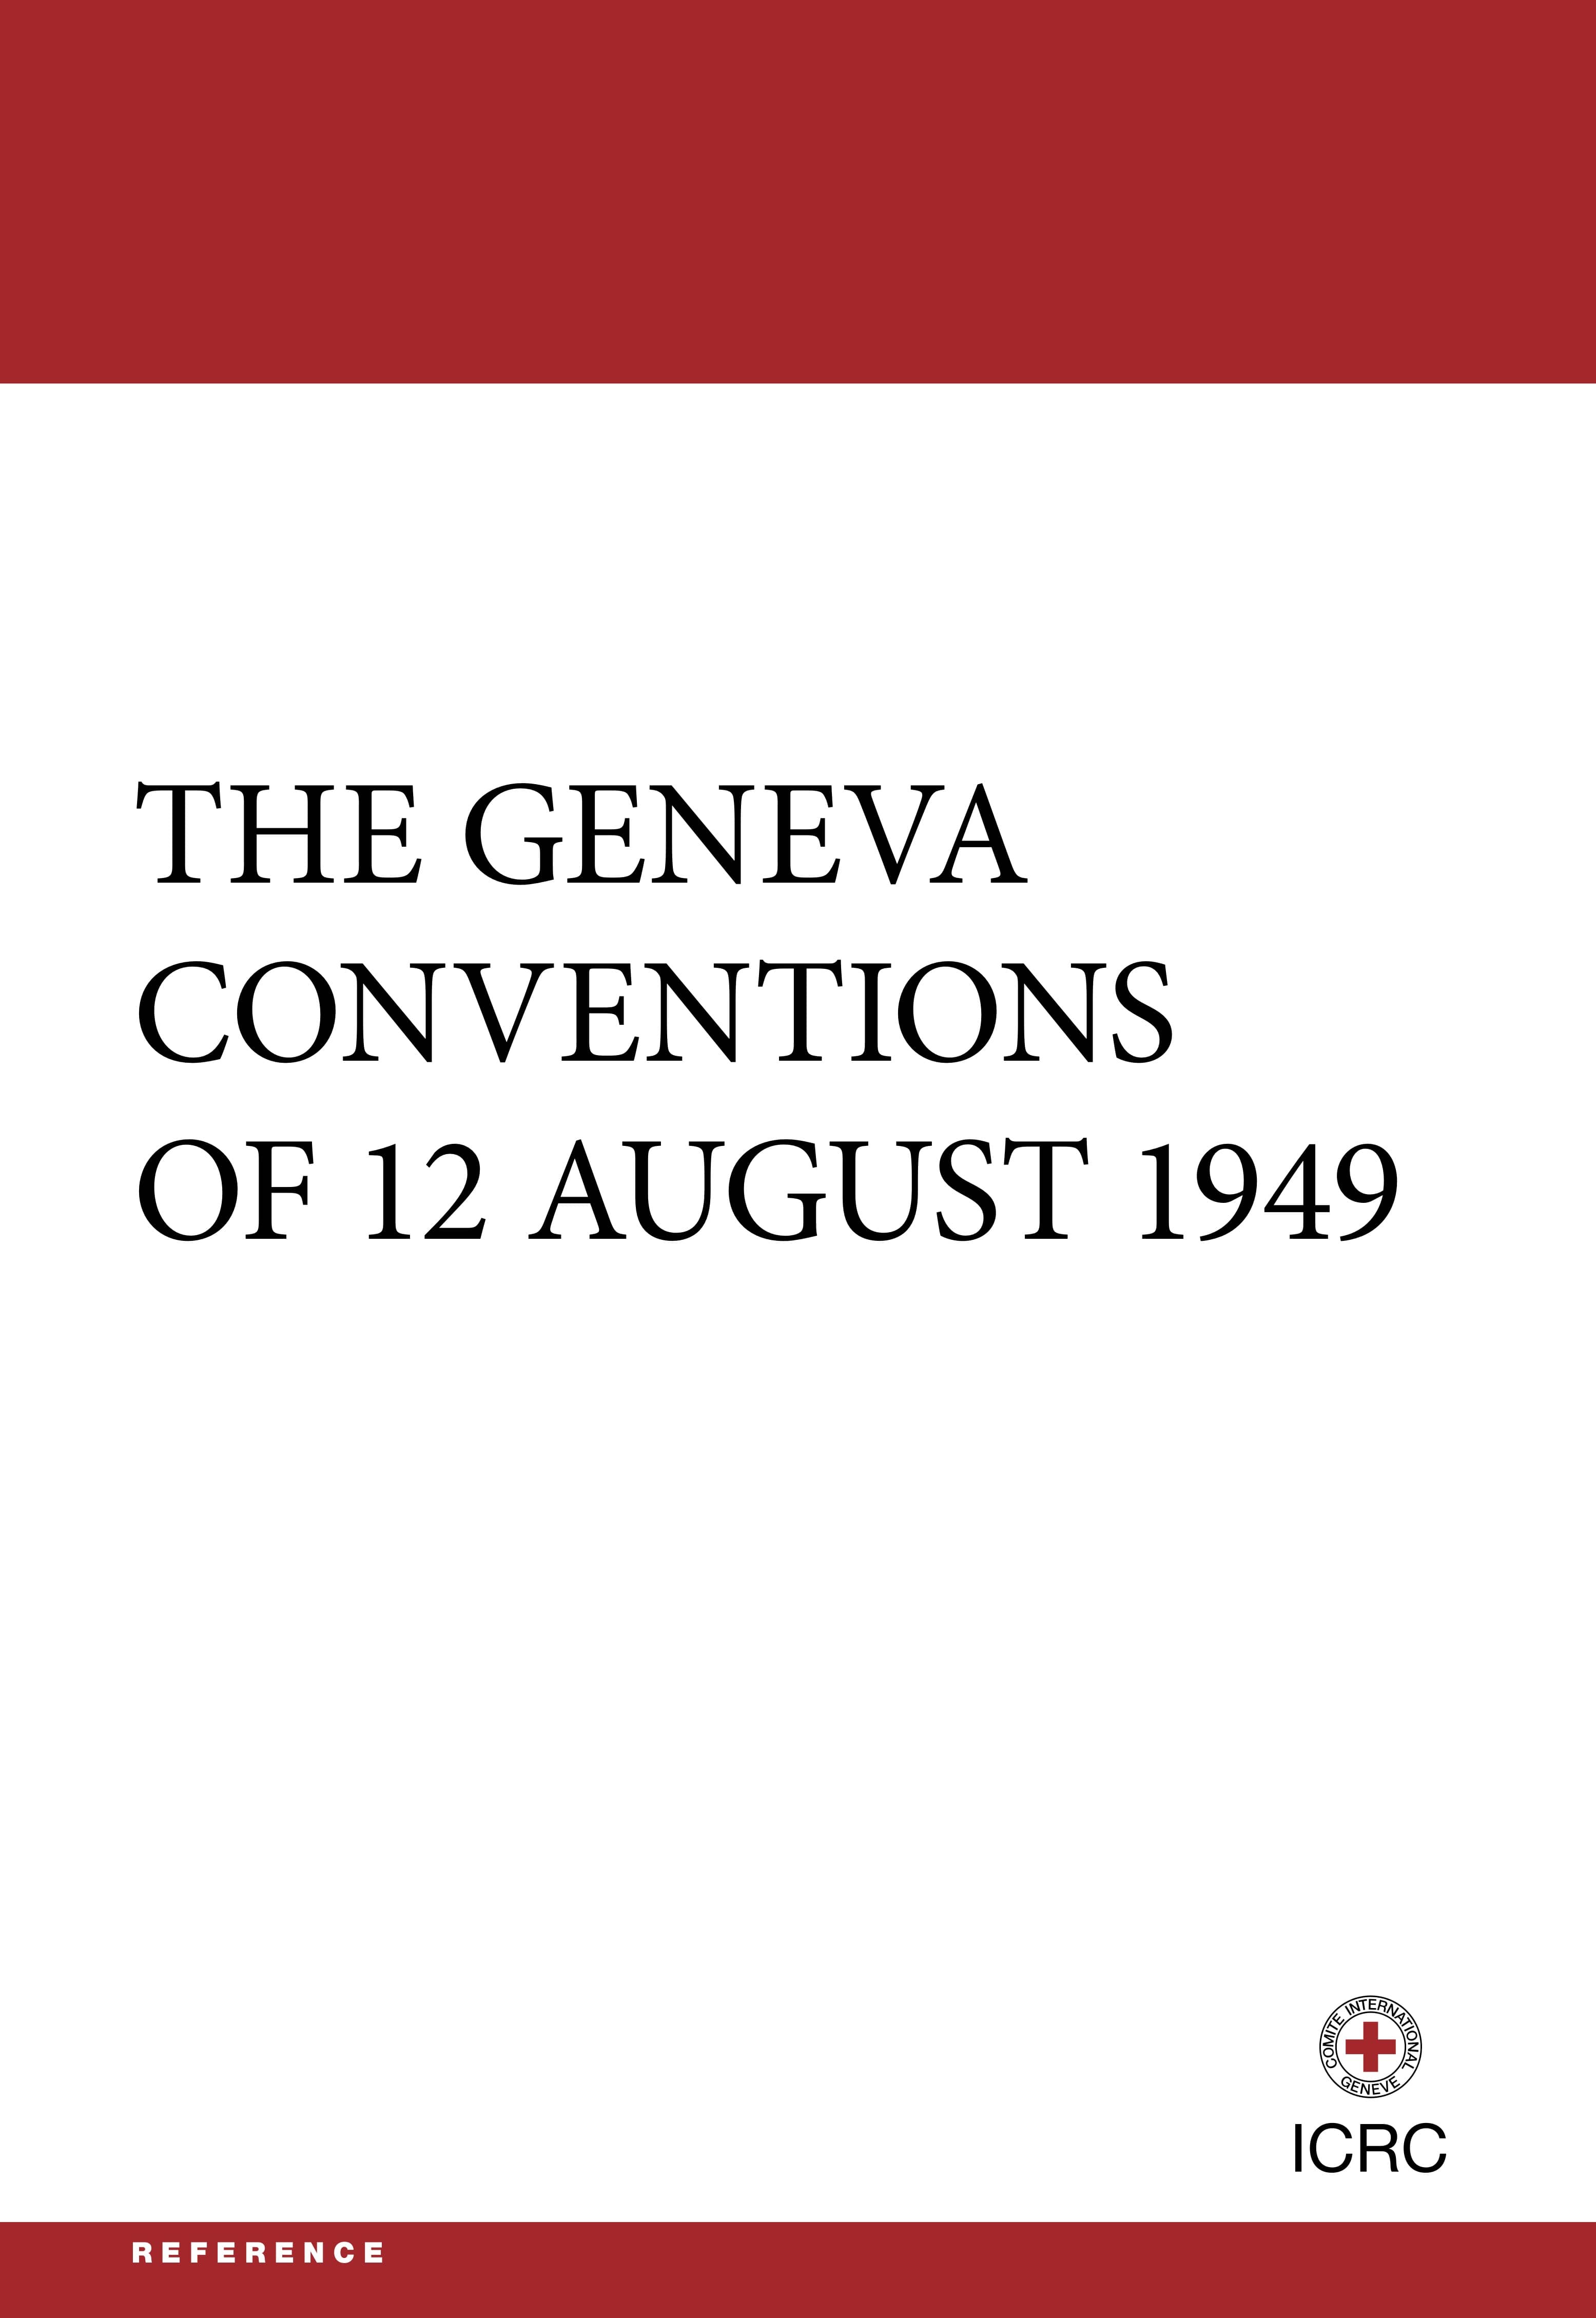 Les Conventions de Genève de 1949